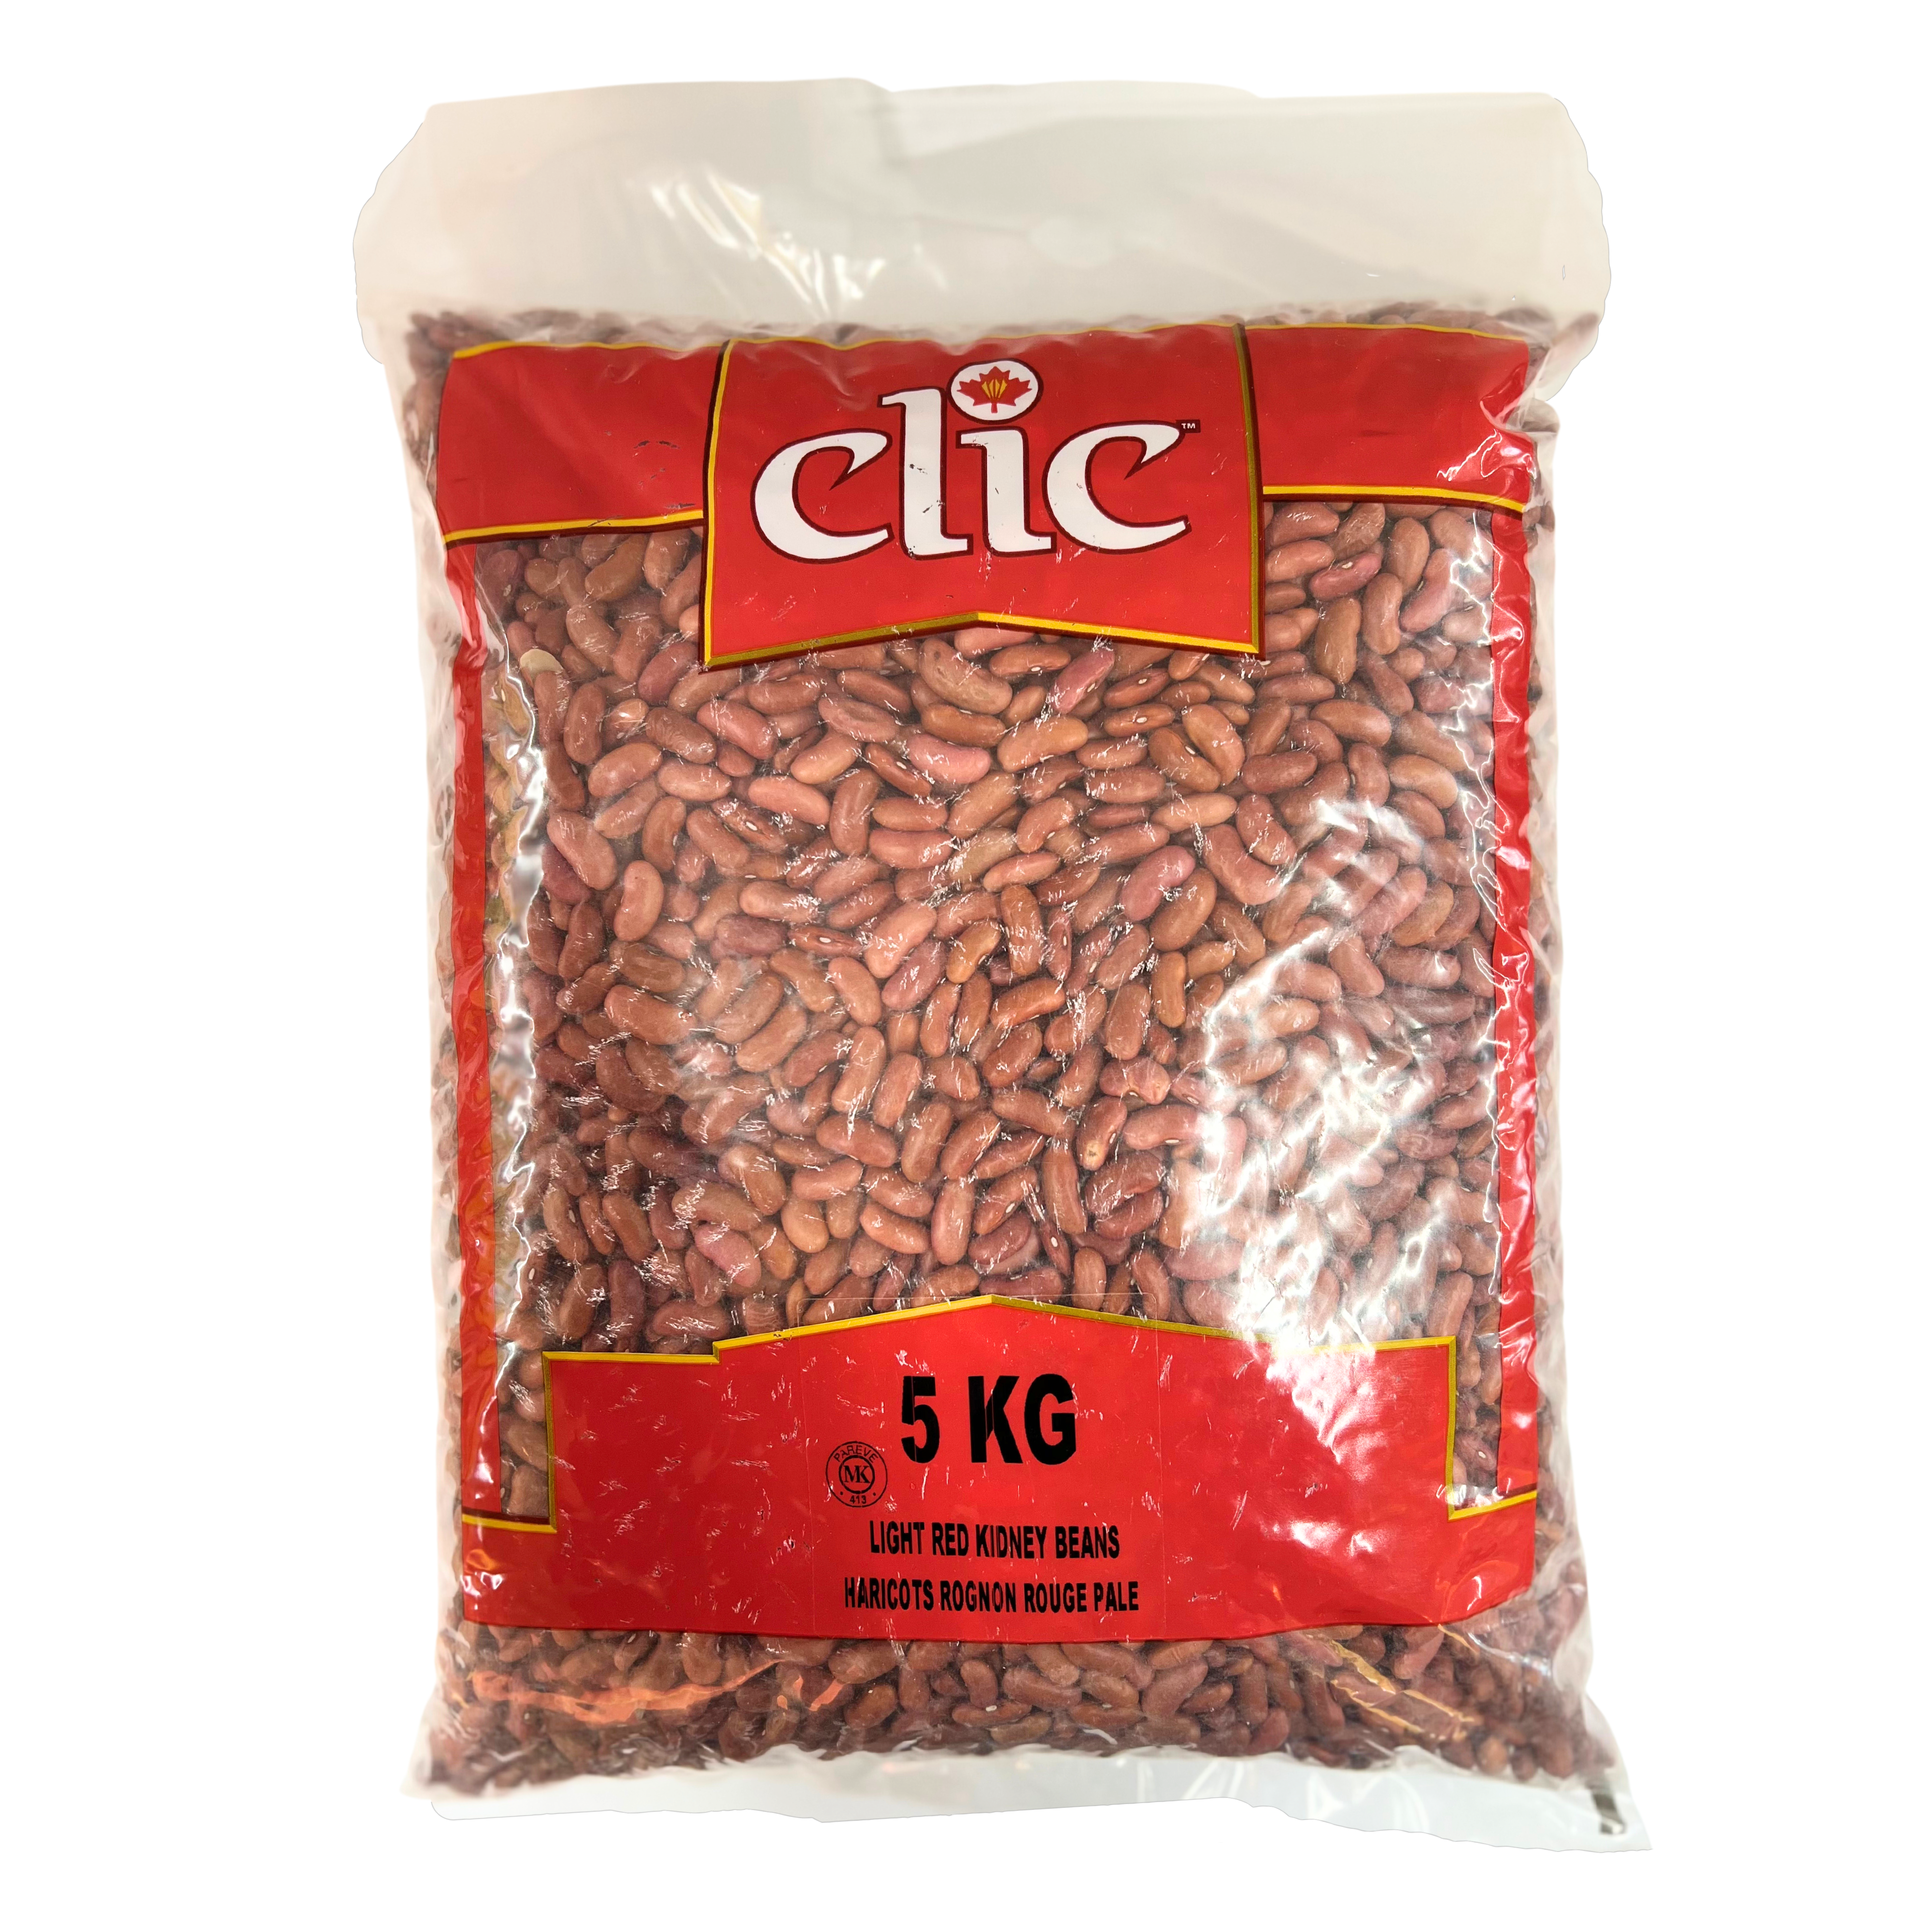 Clic Red Kidney Beans Light 5KG